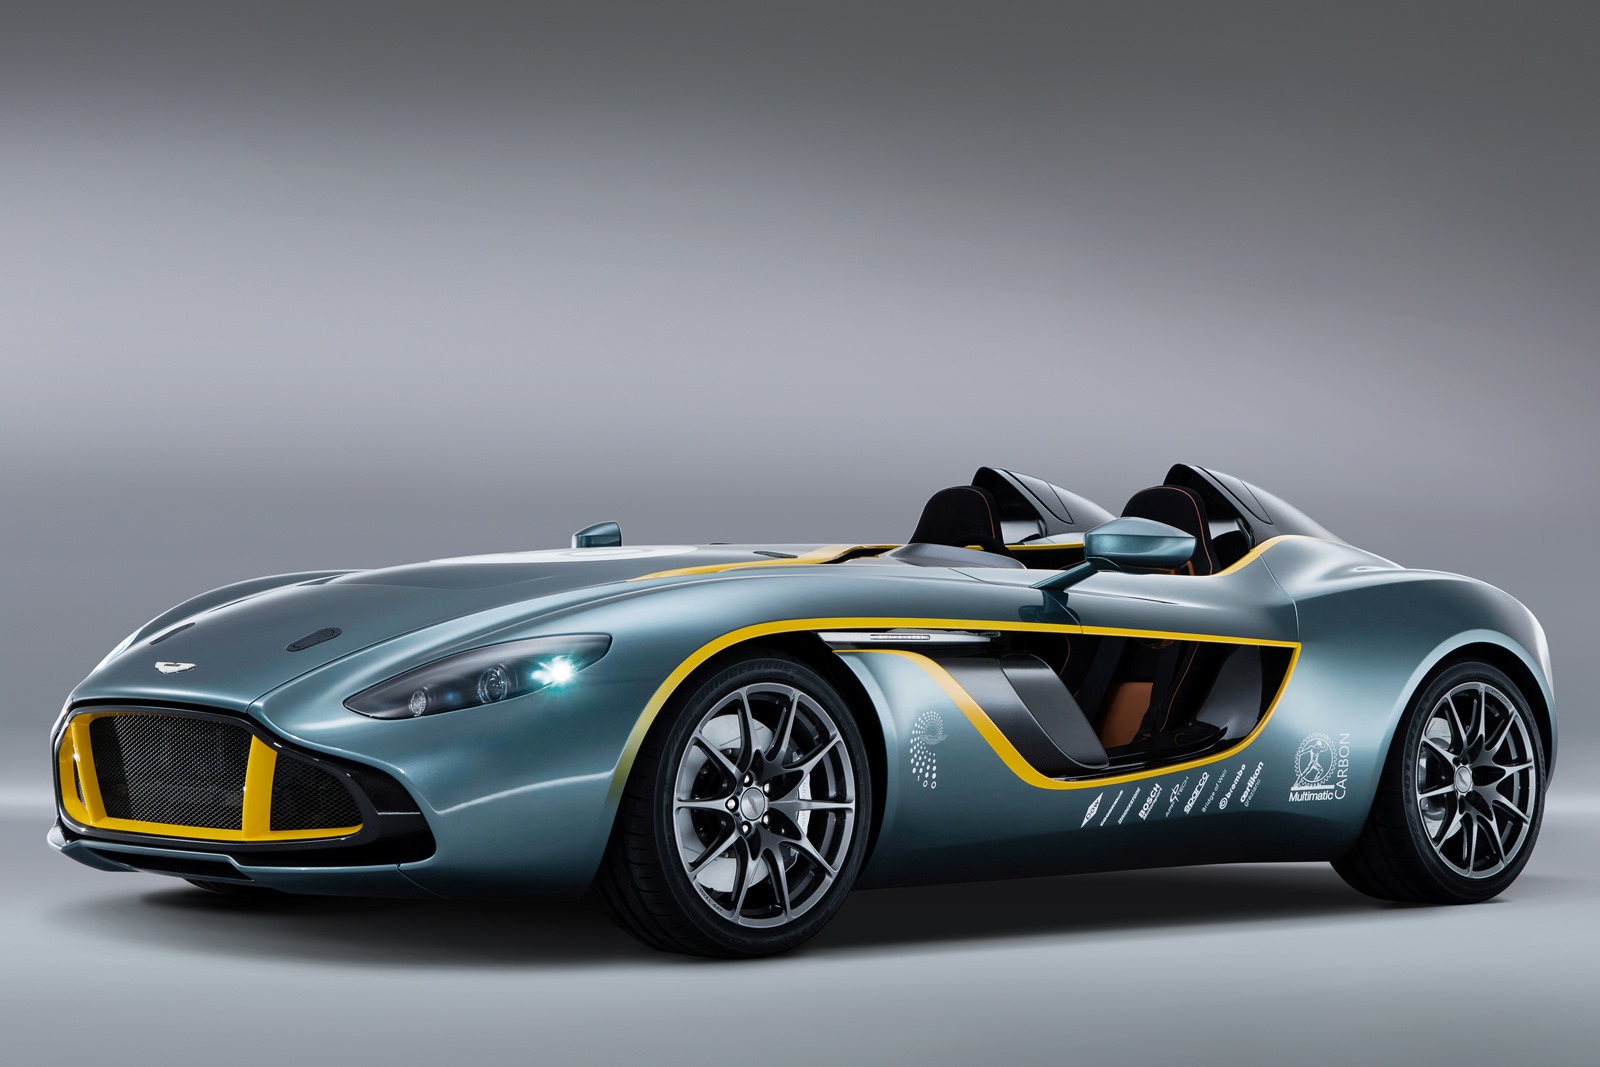 Aston Martin Cars - News: CC100 Speedster concept1600 x 1067